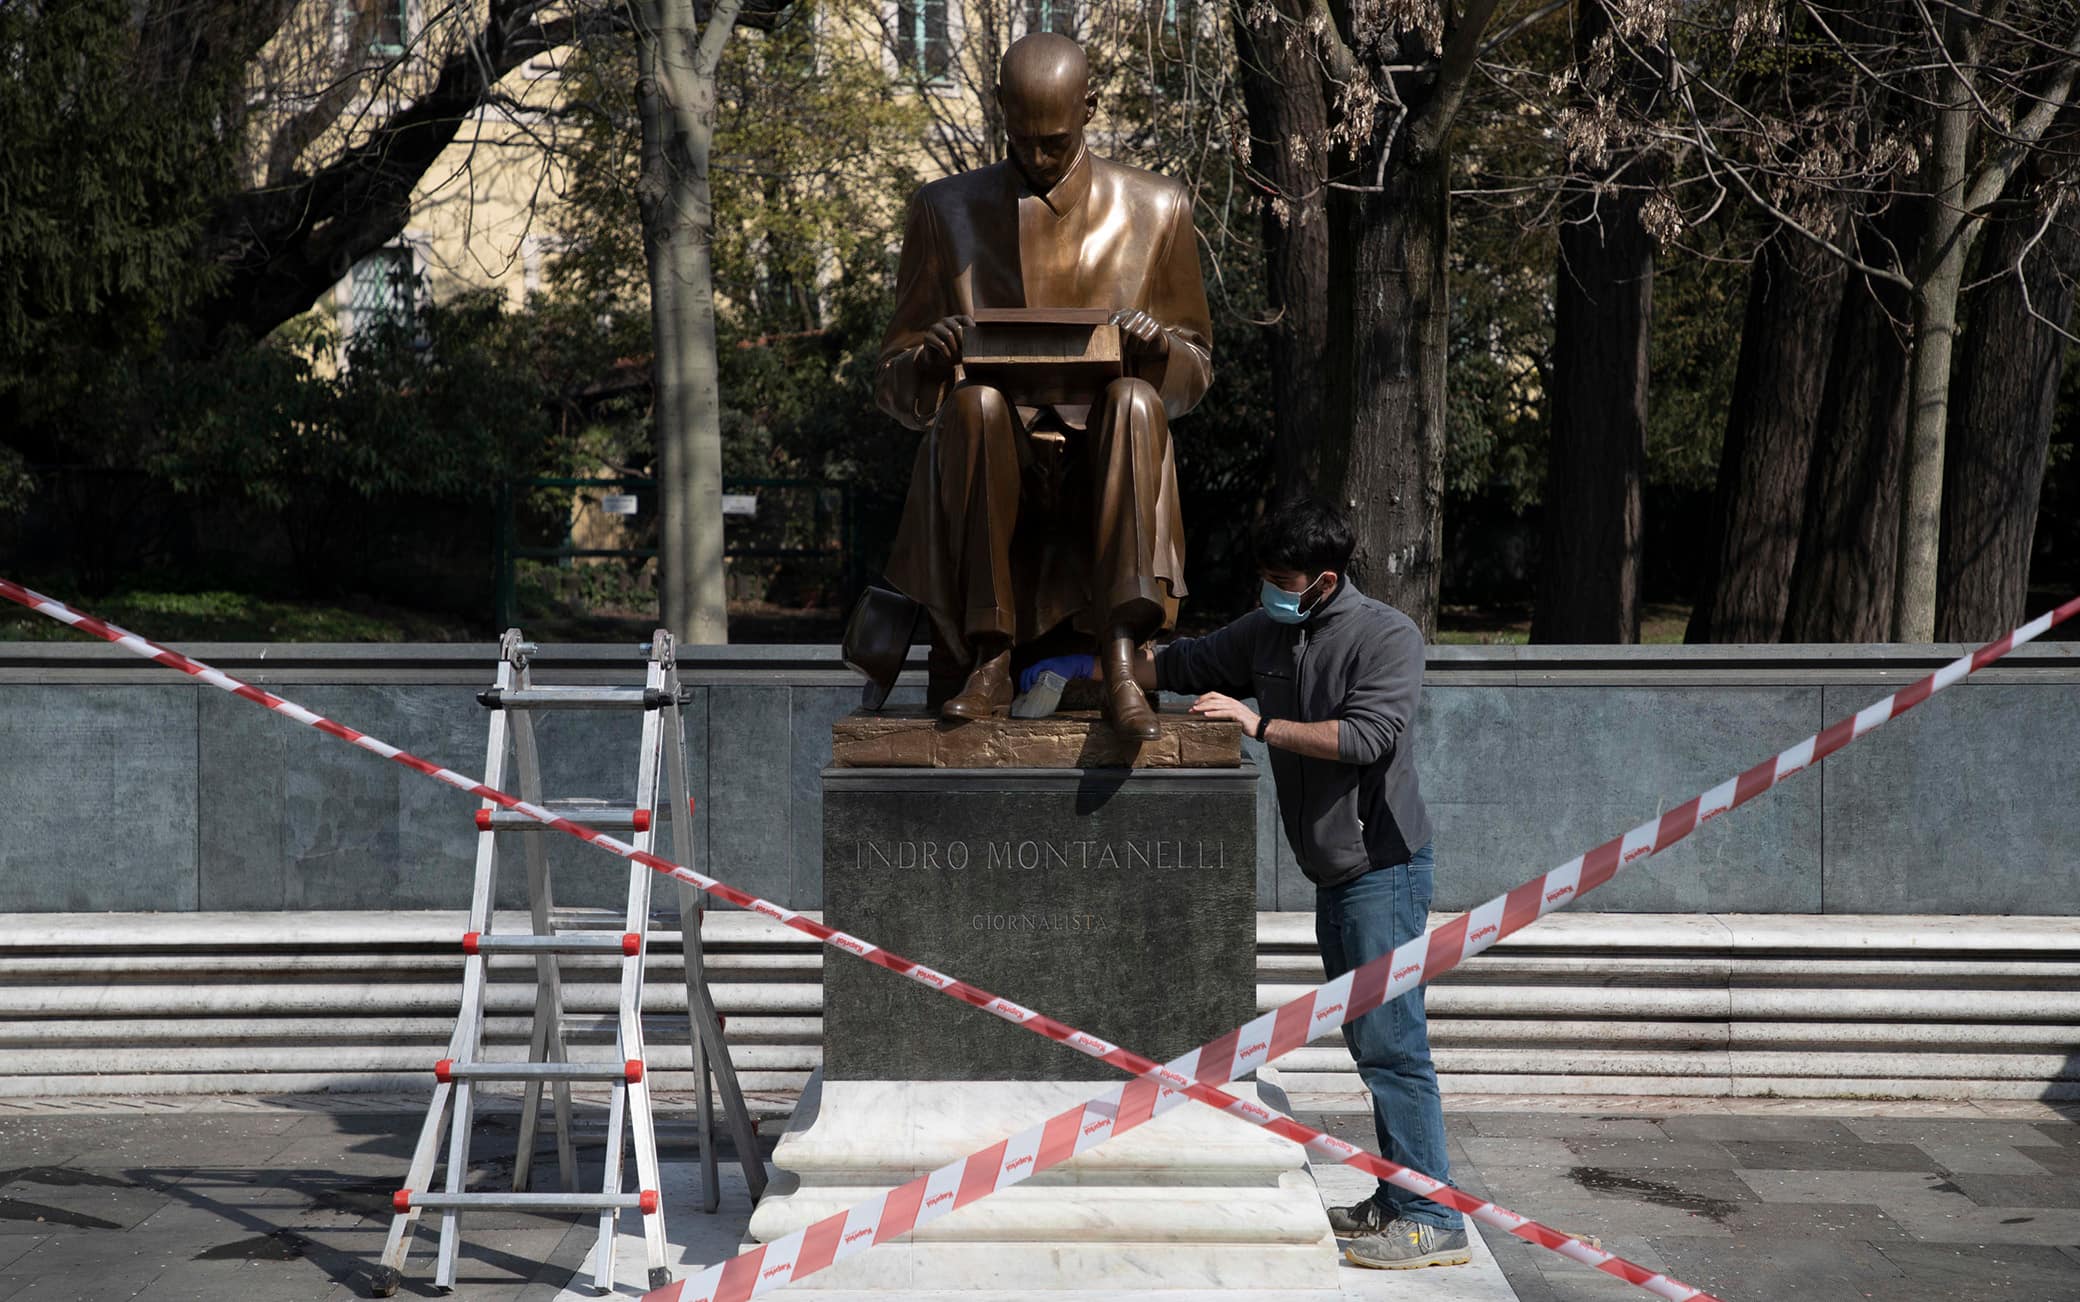 Dopo che ieri la statua di Indro Montanelli situata nei giardini di Porta Venezia è stata nuovamente imbrattata, i restauratori puliscono i graffiti fatti con la vernice, Milano, 12 marzo 2021. ANSA/ MARCO OTTICO